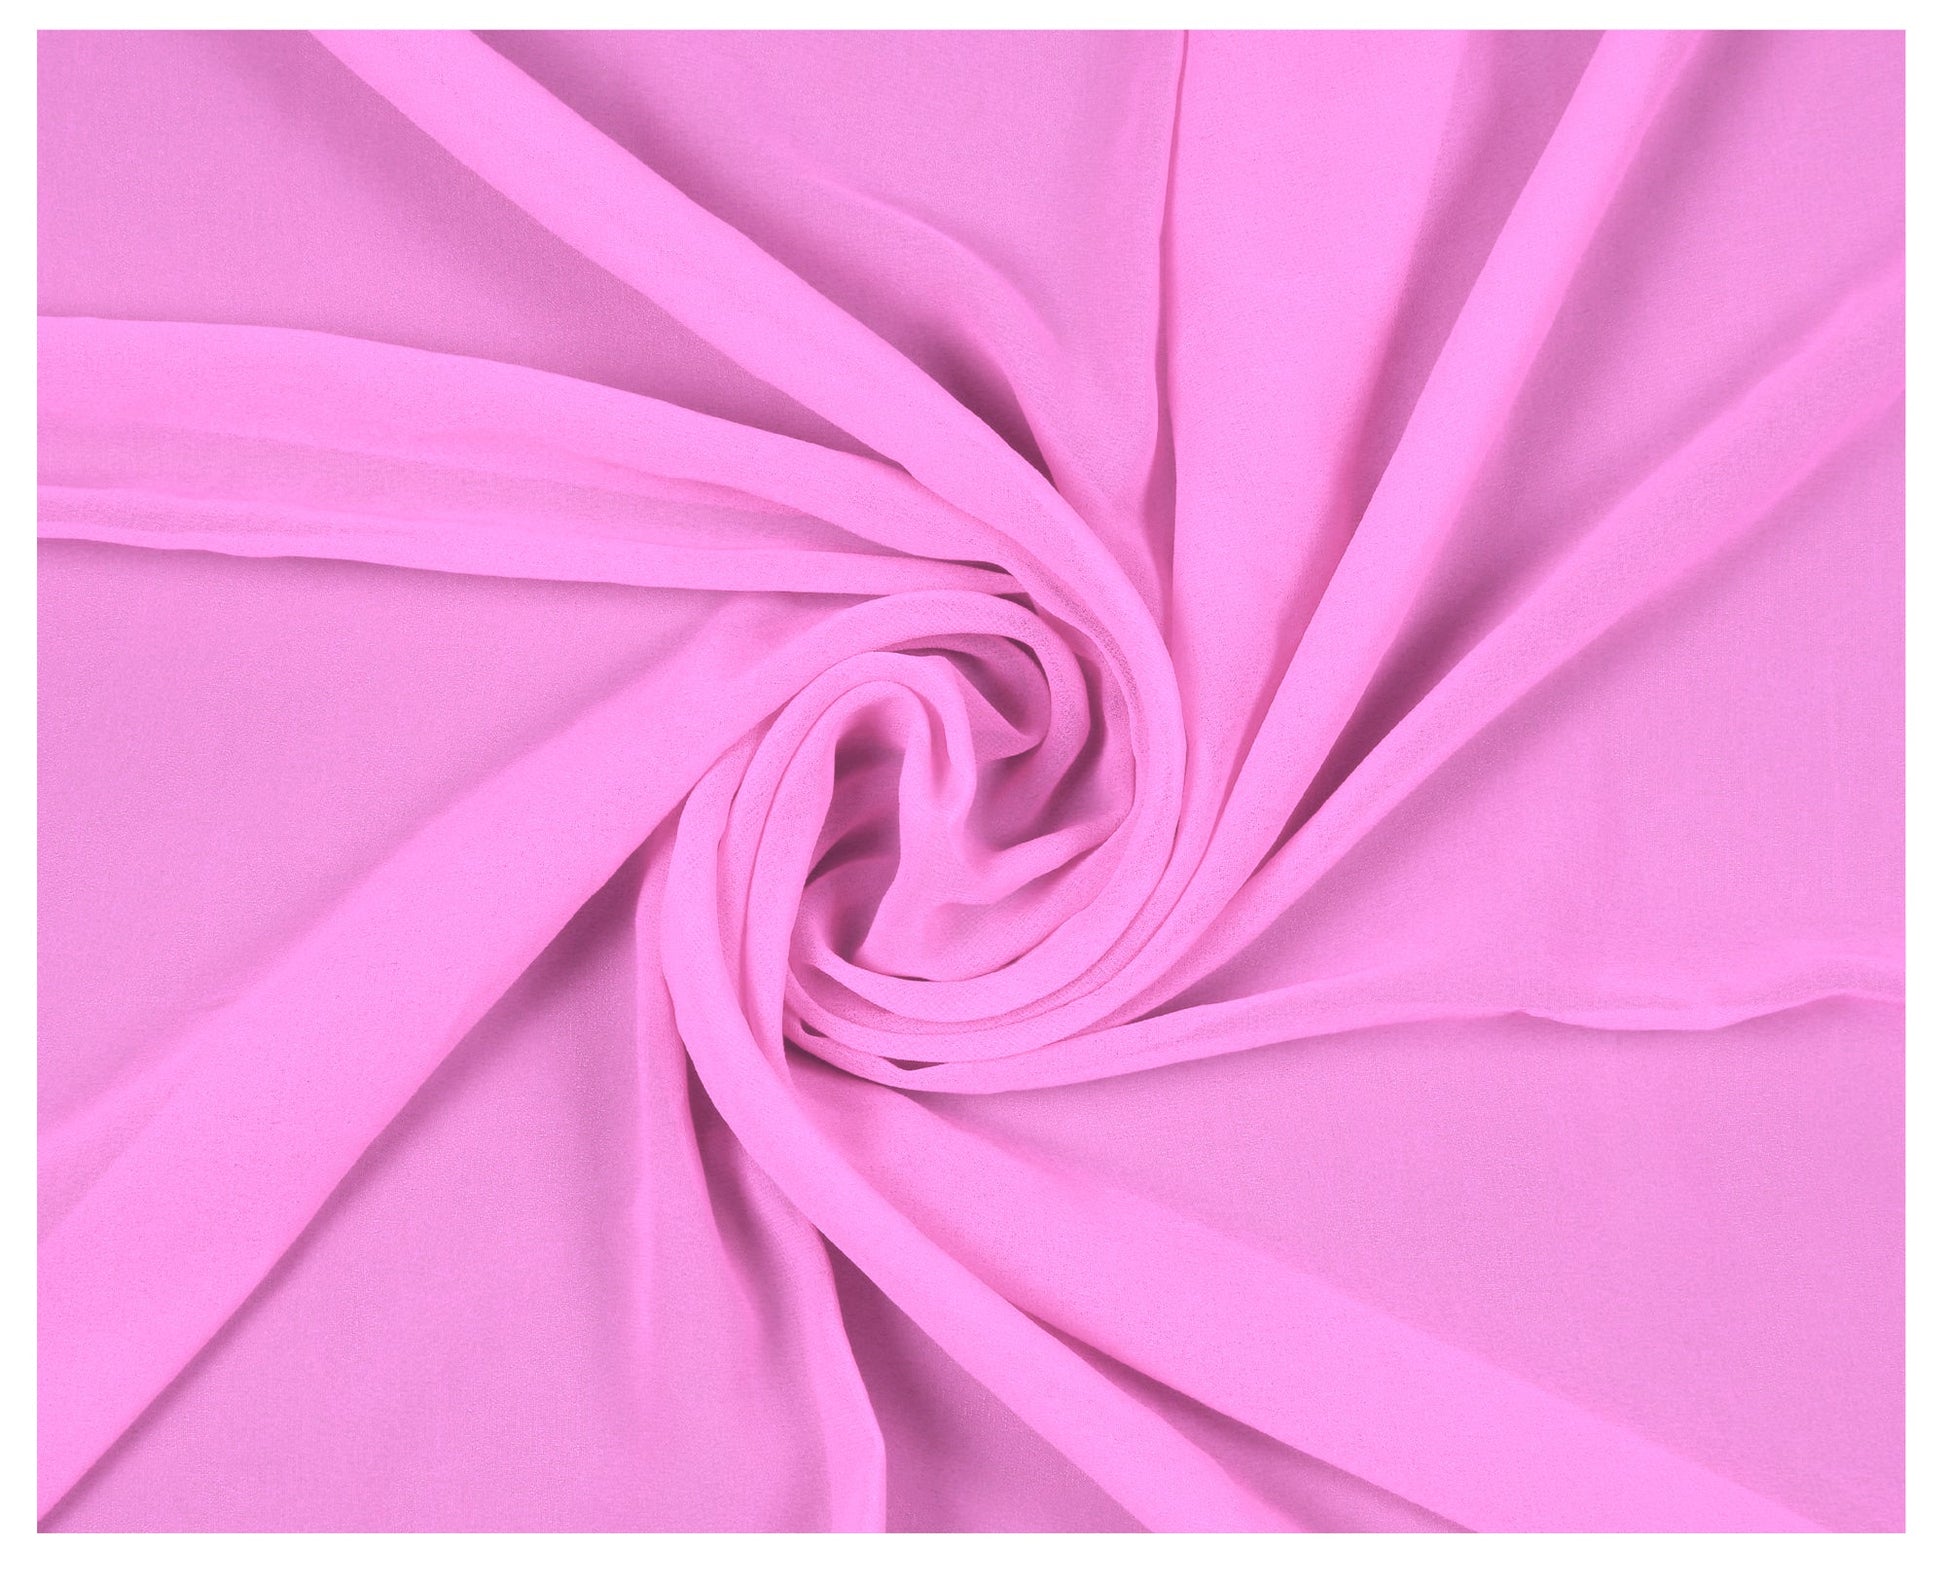 Bubblegum Pink,24e305c2-9f9c-4403-aa21-59547c87e20f